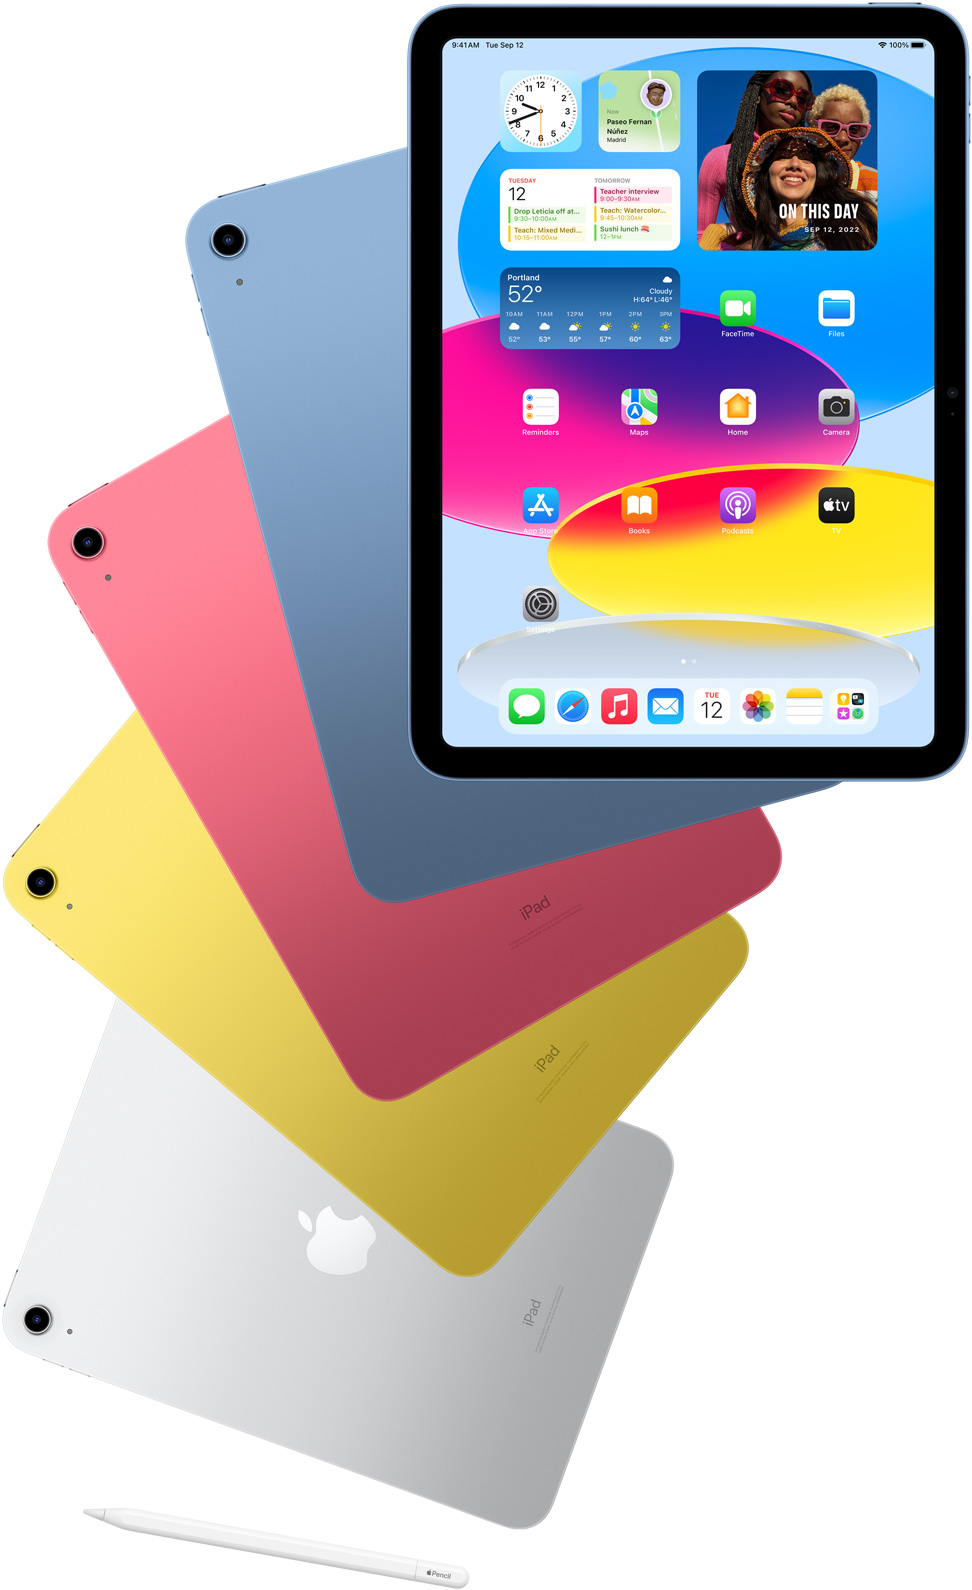 iPad di depan menampilkan layar home dengan iPad berwarna biru, pink, kuning, dan perak di belakangnya memperlihatkan bagian belakang. Apple Pencil ada di sebelah model iPad.